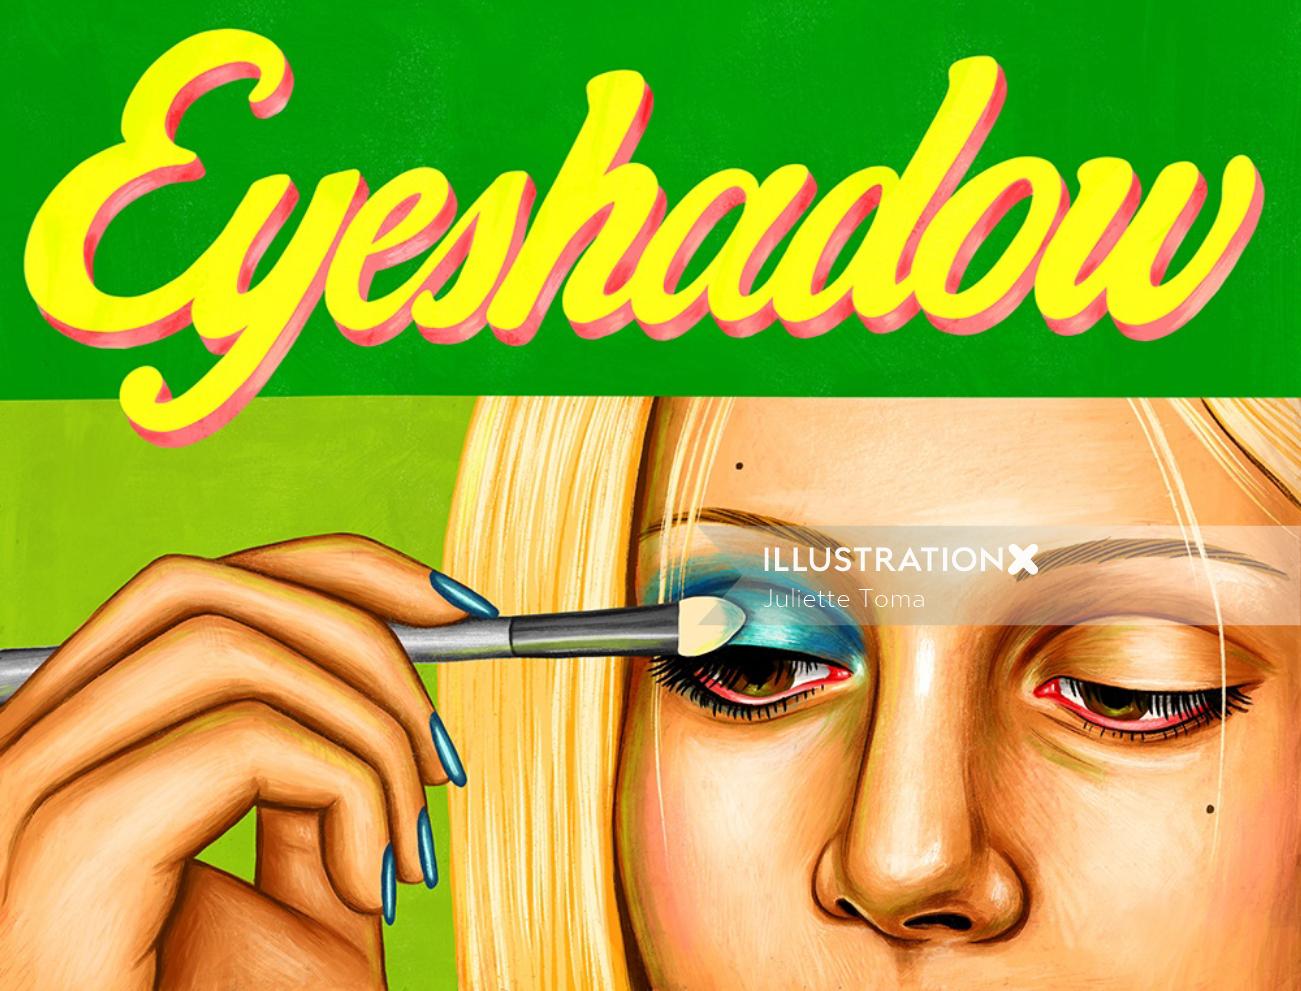 Fashion illustration of Eye shadow